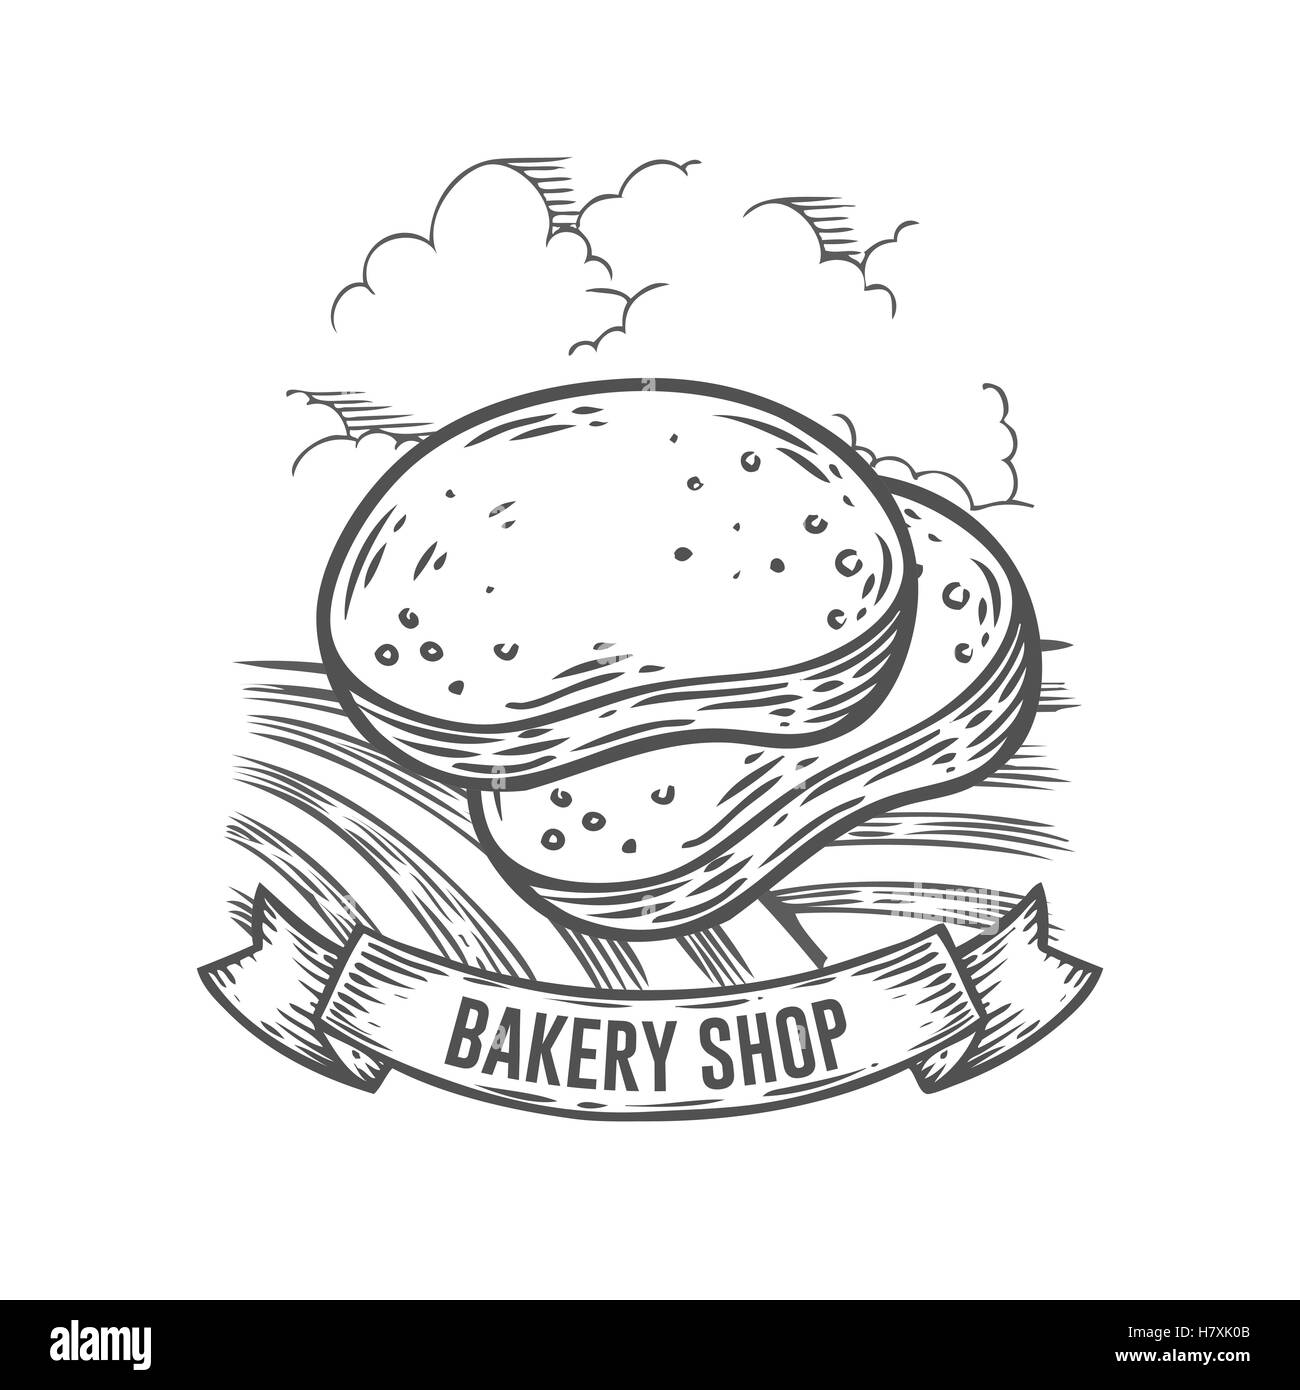 Bäckerei-Shop-Brot-Abzeichen. Monochrom Vintage gravierte Brötchen, glutenfreie Bio Zeichen isoliert auf weißem Hintergrund. Skizze handgezeichnete re Stock Vektor